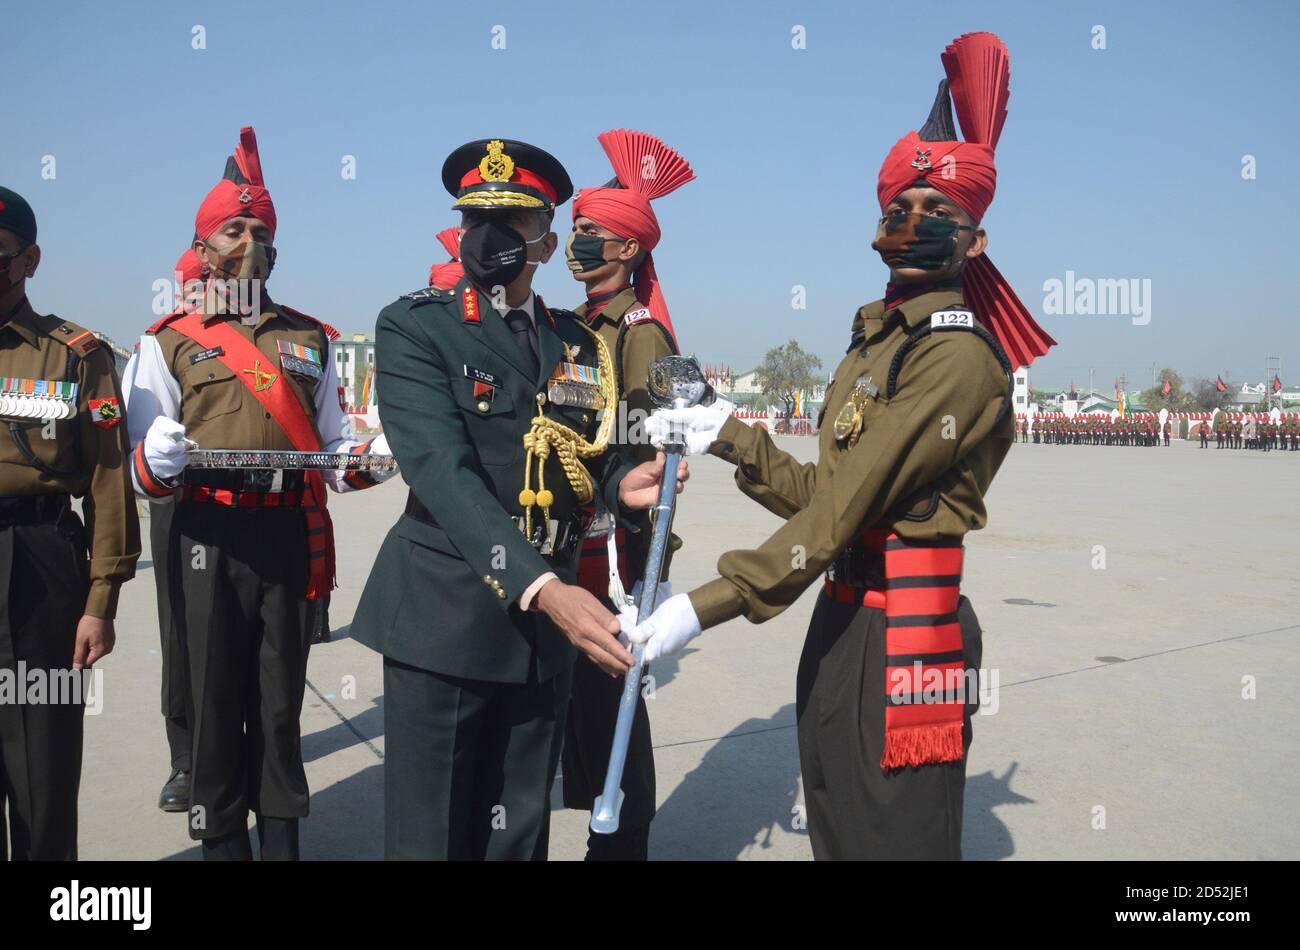 LT Gen. BS RAJU, der General Officer Commanding (GOC) von Srinagar-basierten Chinar (15) Corps in der Teilnahme an der Passing-out-Parade als 301 neue Rekruten wurden in der Armee Jammu und Kaschmir Light Infantry (JAKLI) Regiment bei einer Passing-Parade hier aufgenommen. Die glitzernde Passierparade fand im JAKLI-Regimentszentrum in Rangreth am Rande der Sommerhauptstadt Srinagar inmitten einer Wiedergabe des Liedes Balidanam Veer Lakshnam statt. Indien. Stockfoto